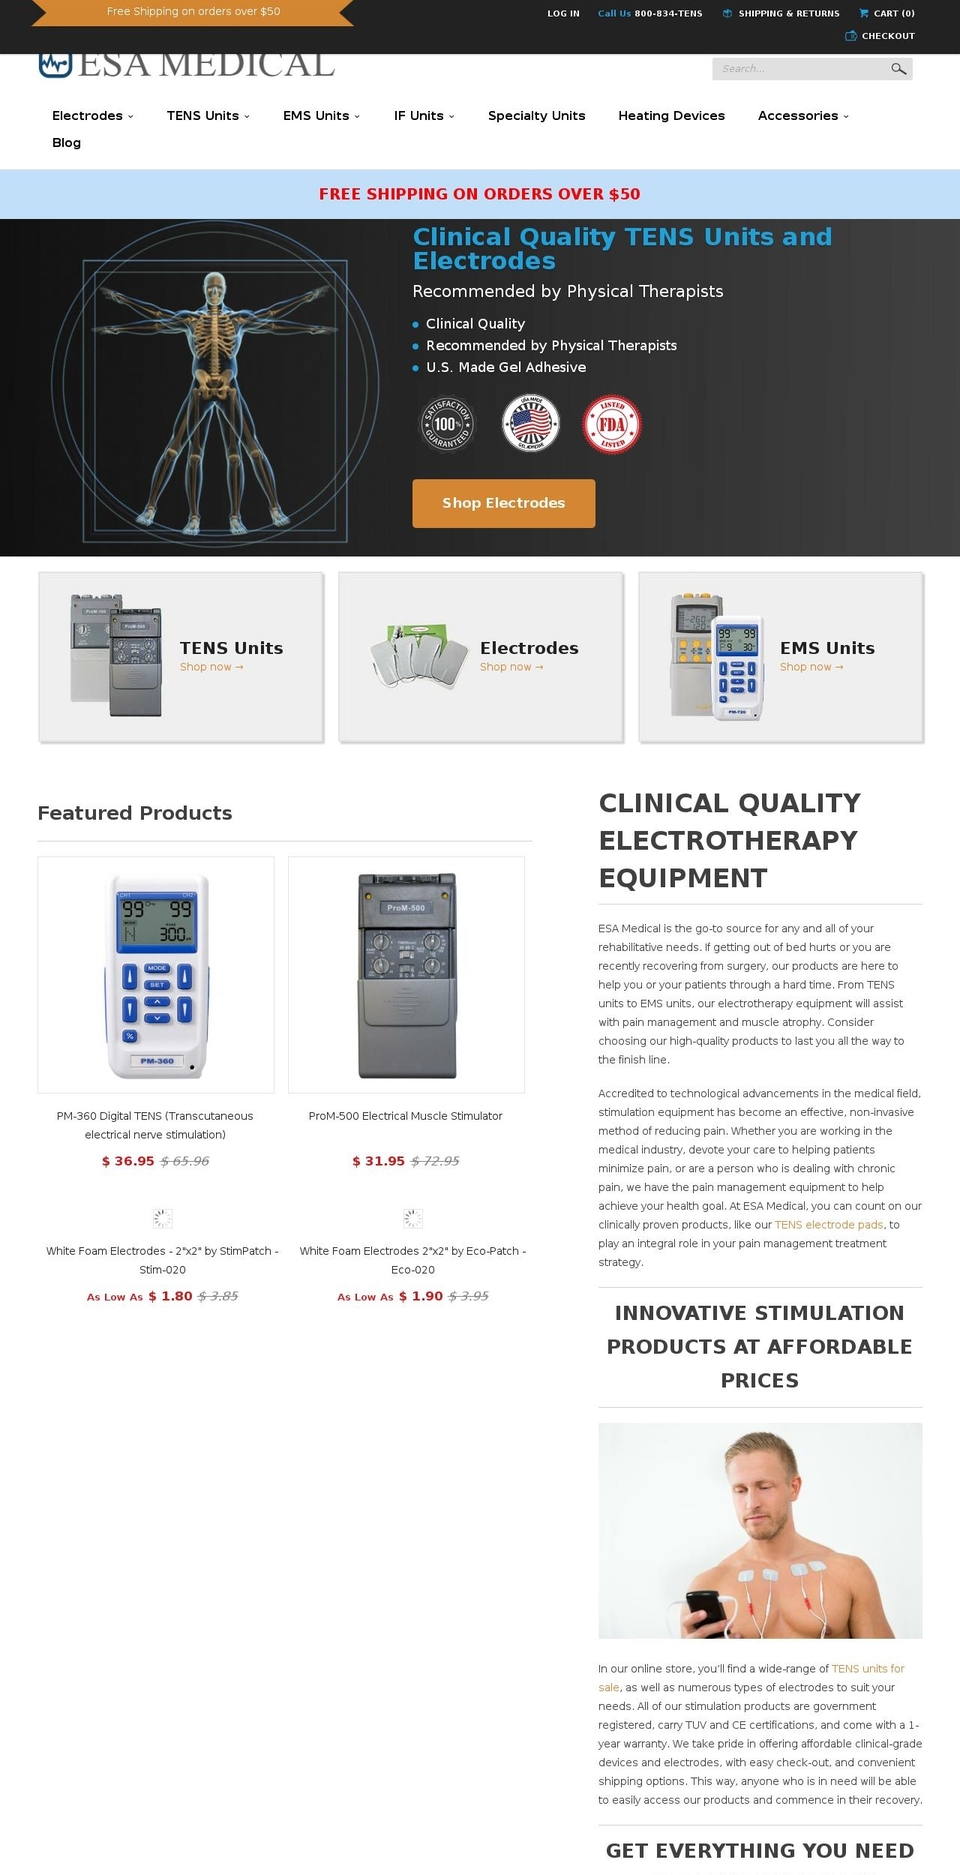 esamedical.com shopify website screenshot